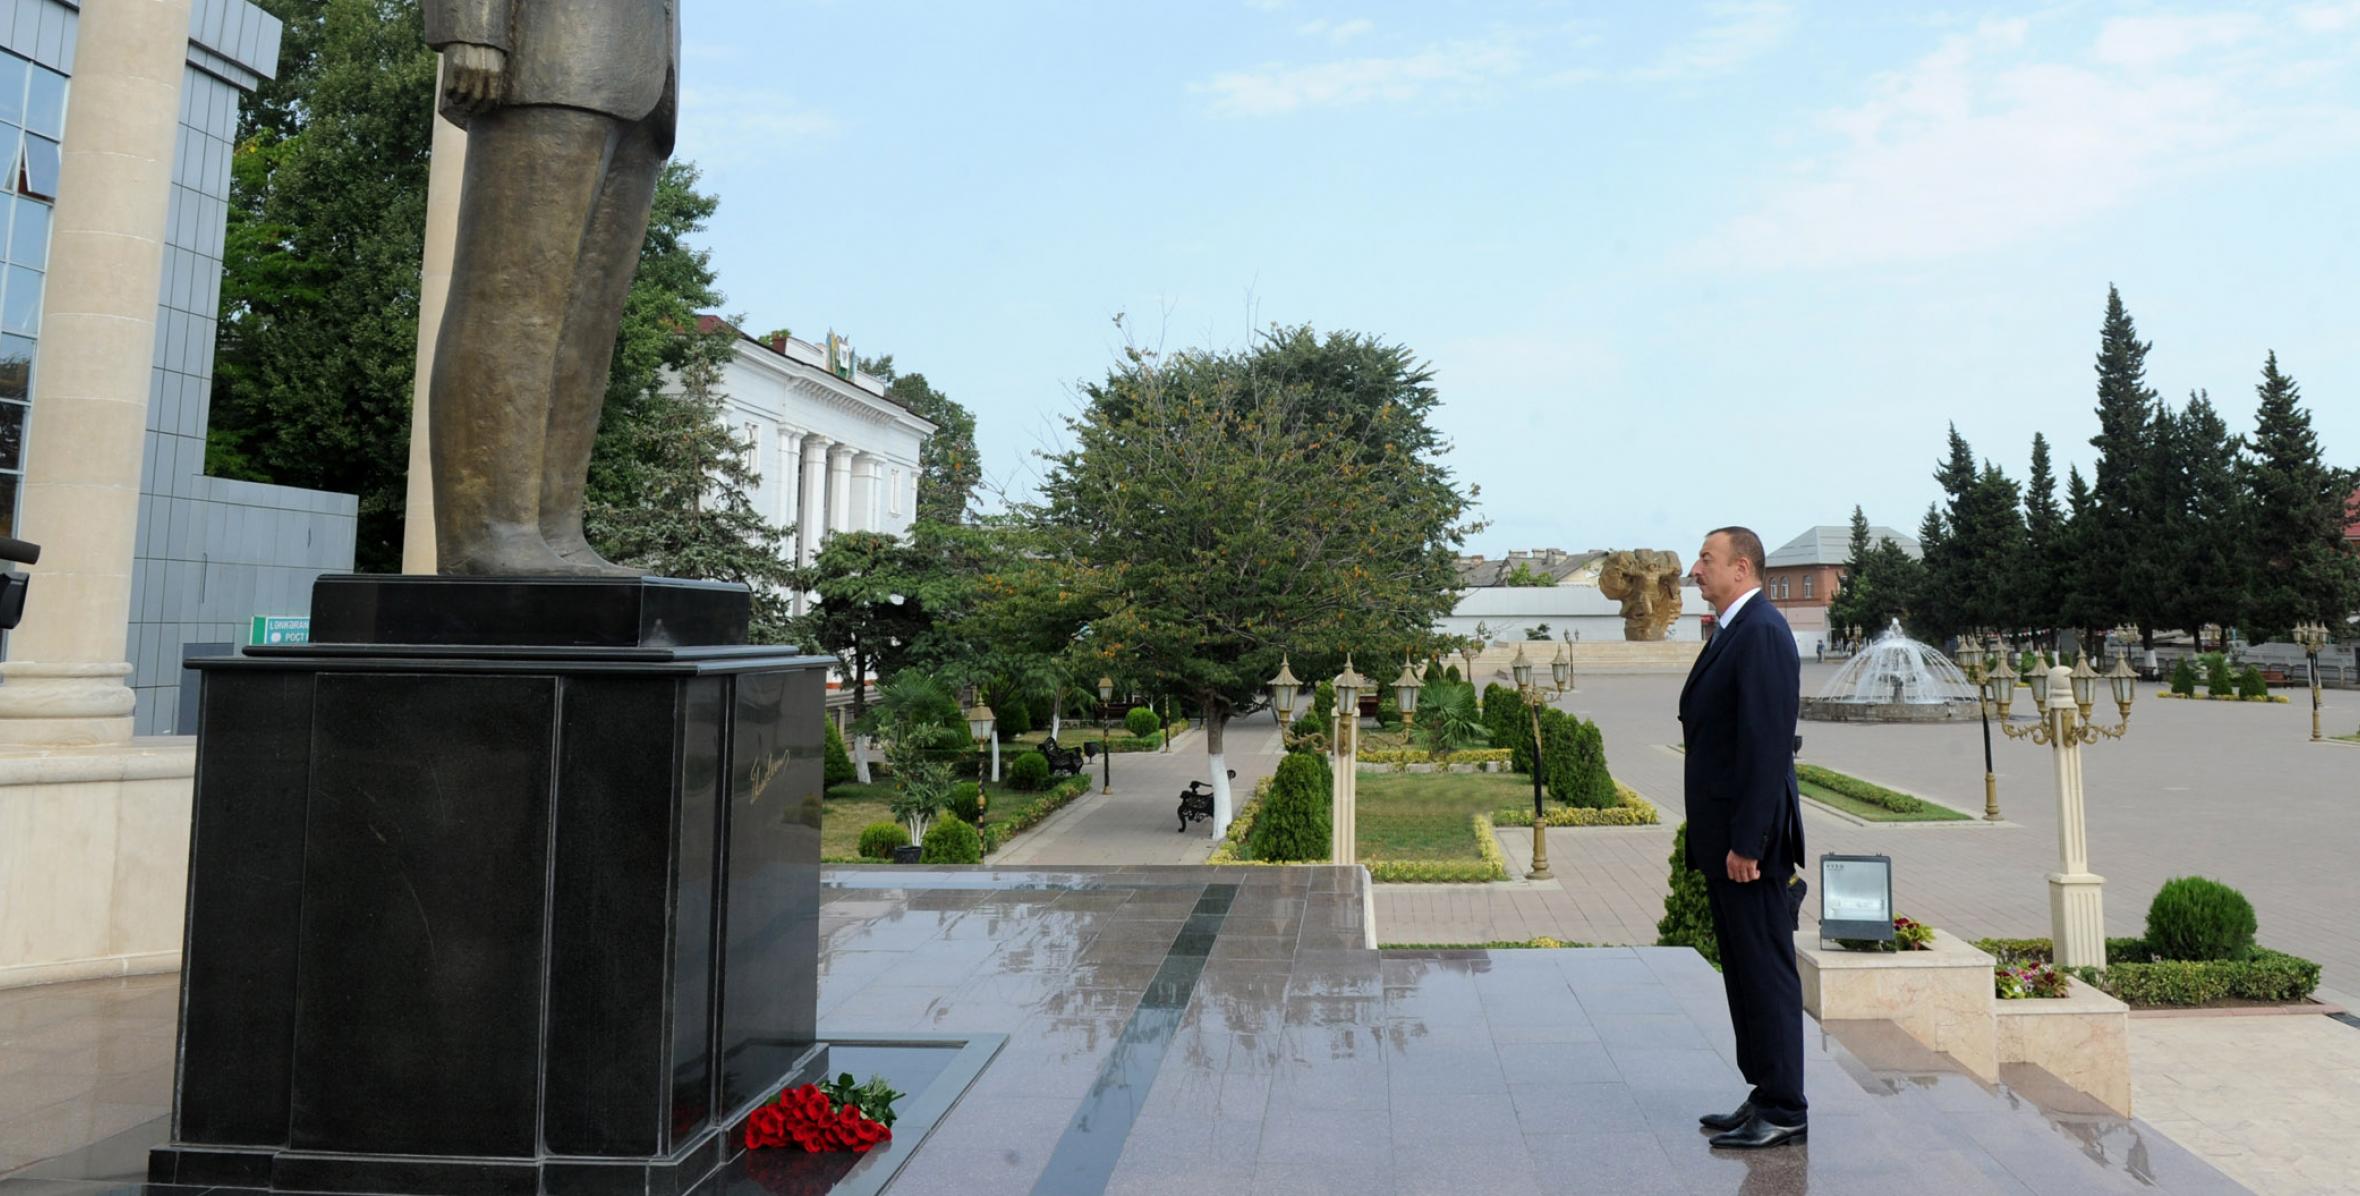 Ilham Aliyev visited the statue of nationwide leader Heydar Aliyev in Lankaran